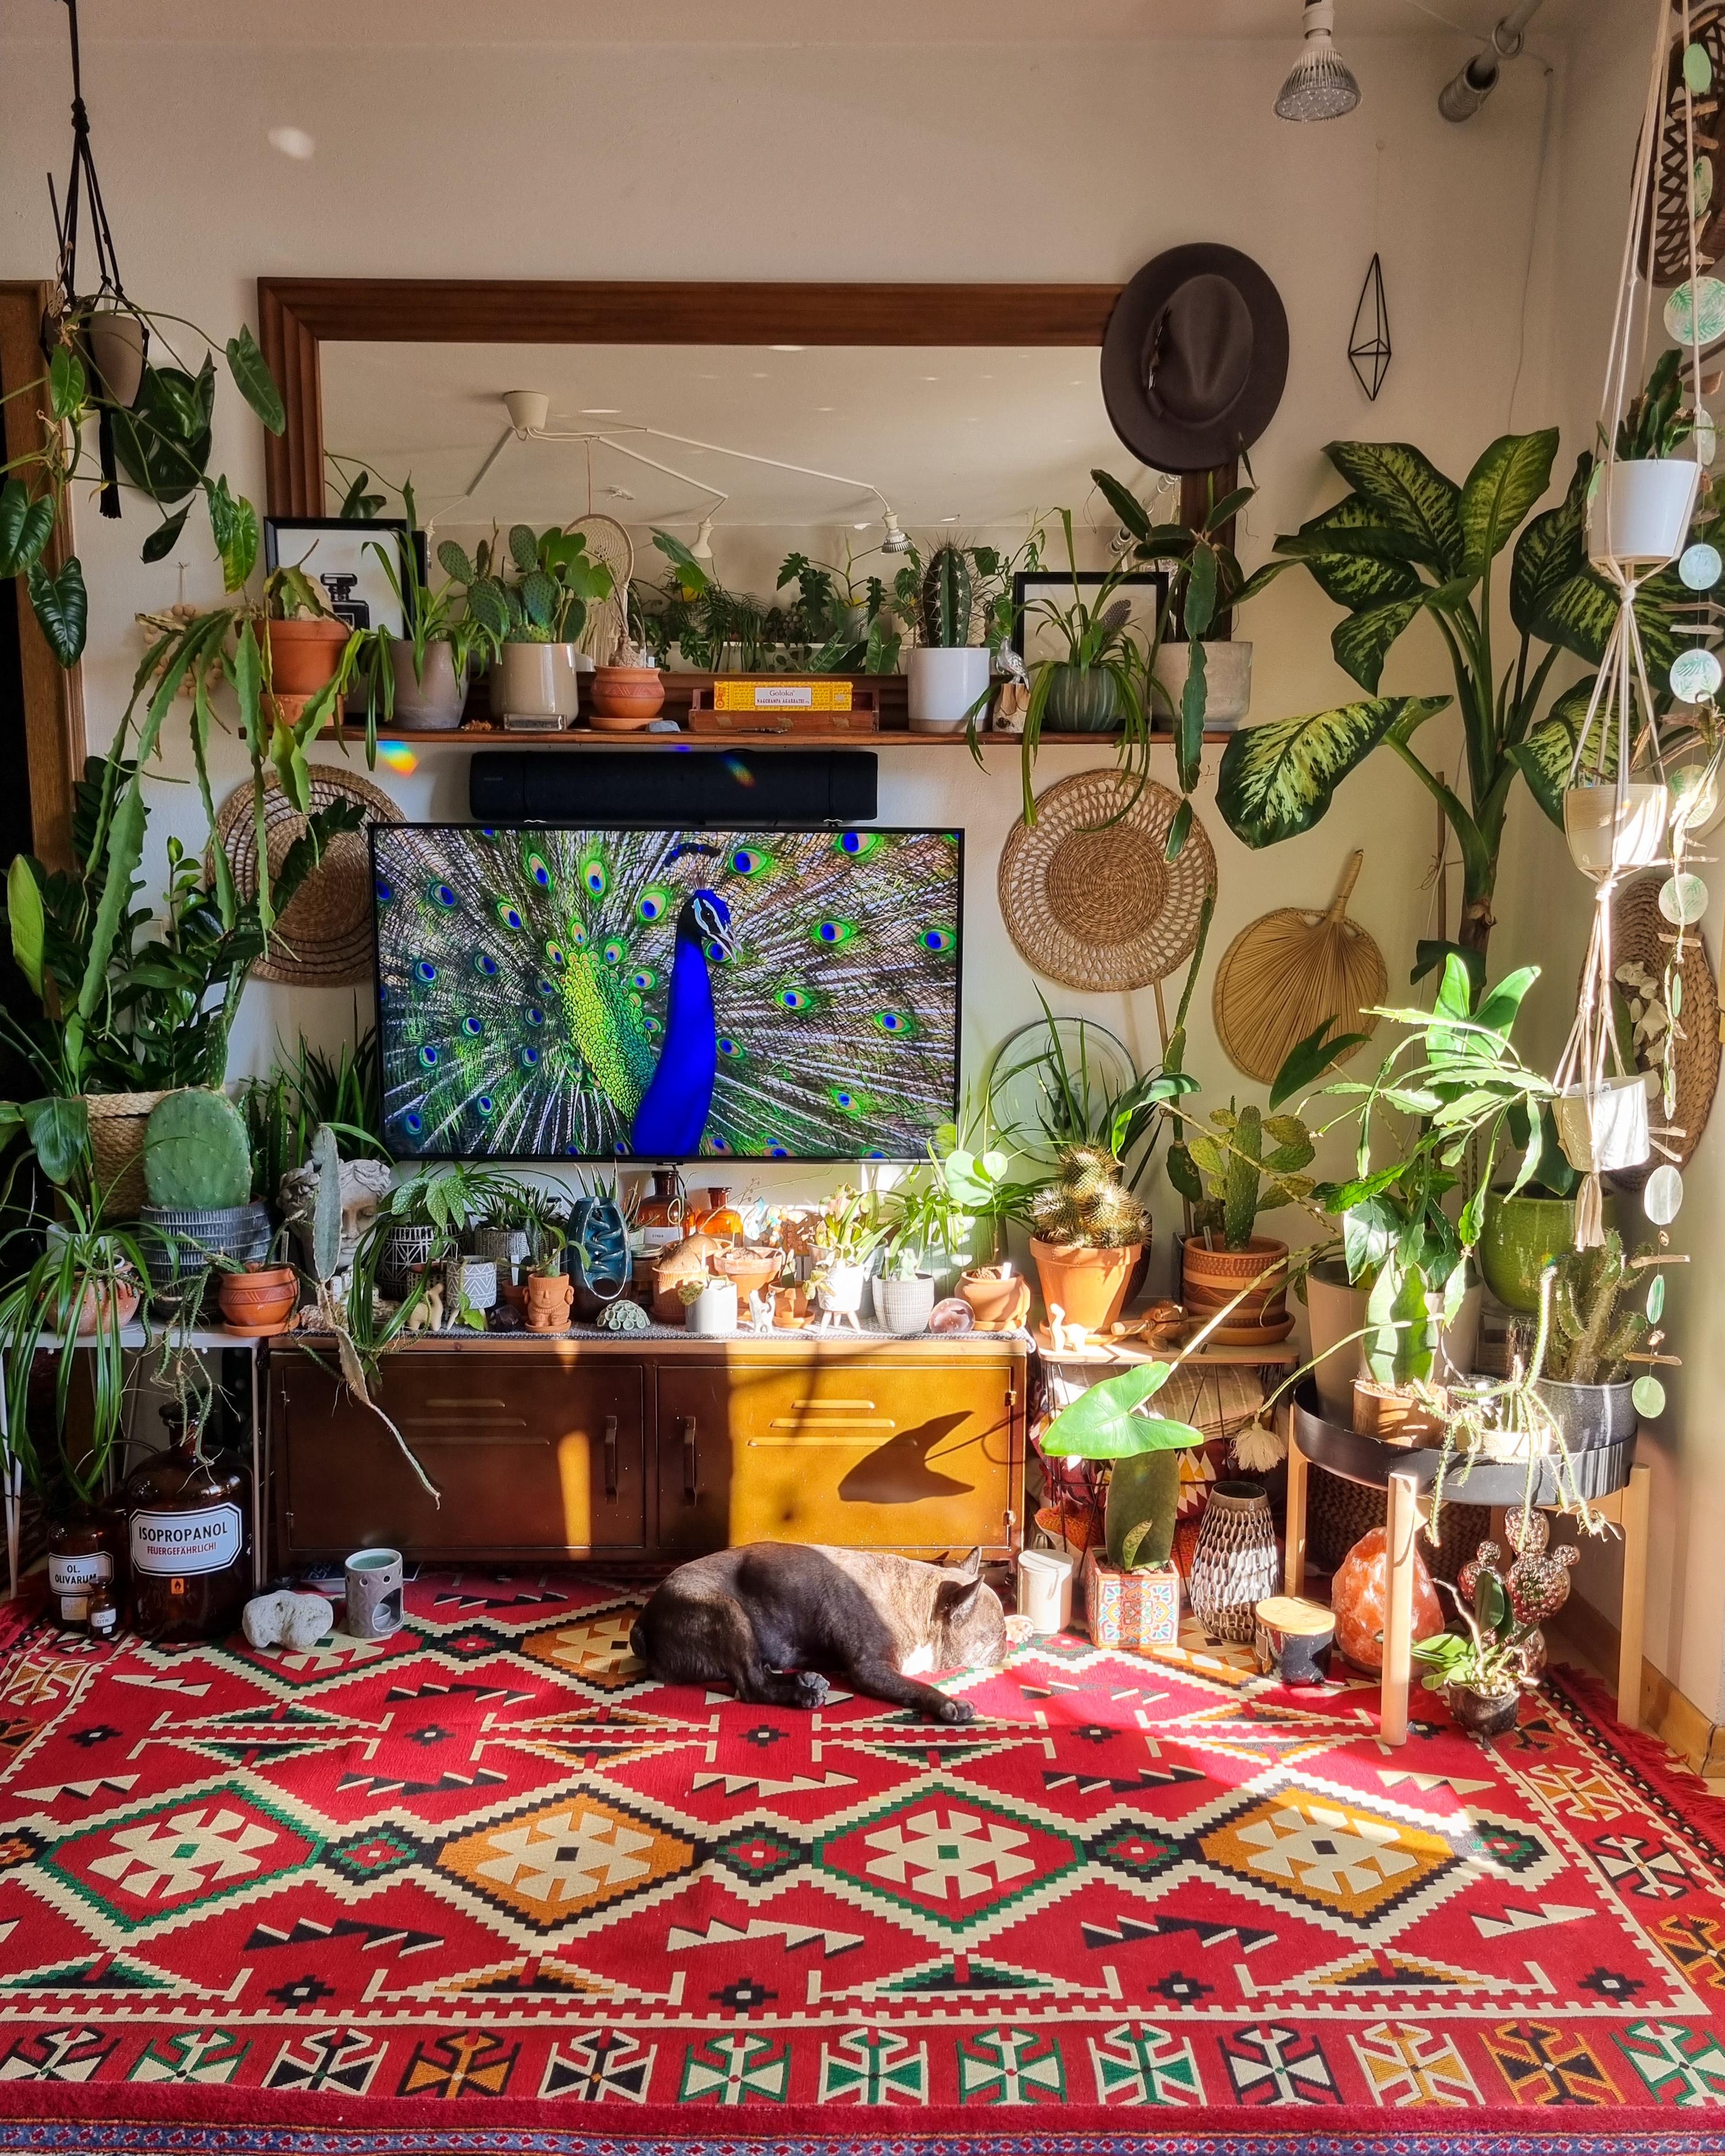 Sonnenanbeterin ☀️ #Wohnzimmer #Pflanzen #Spiegel #Fernseher #Teppich #boho #hippie #couchstyle #Kommode #sideboard